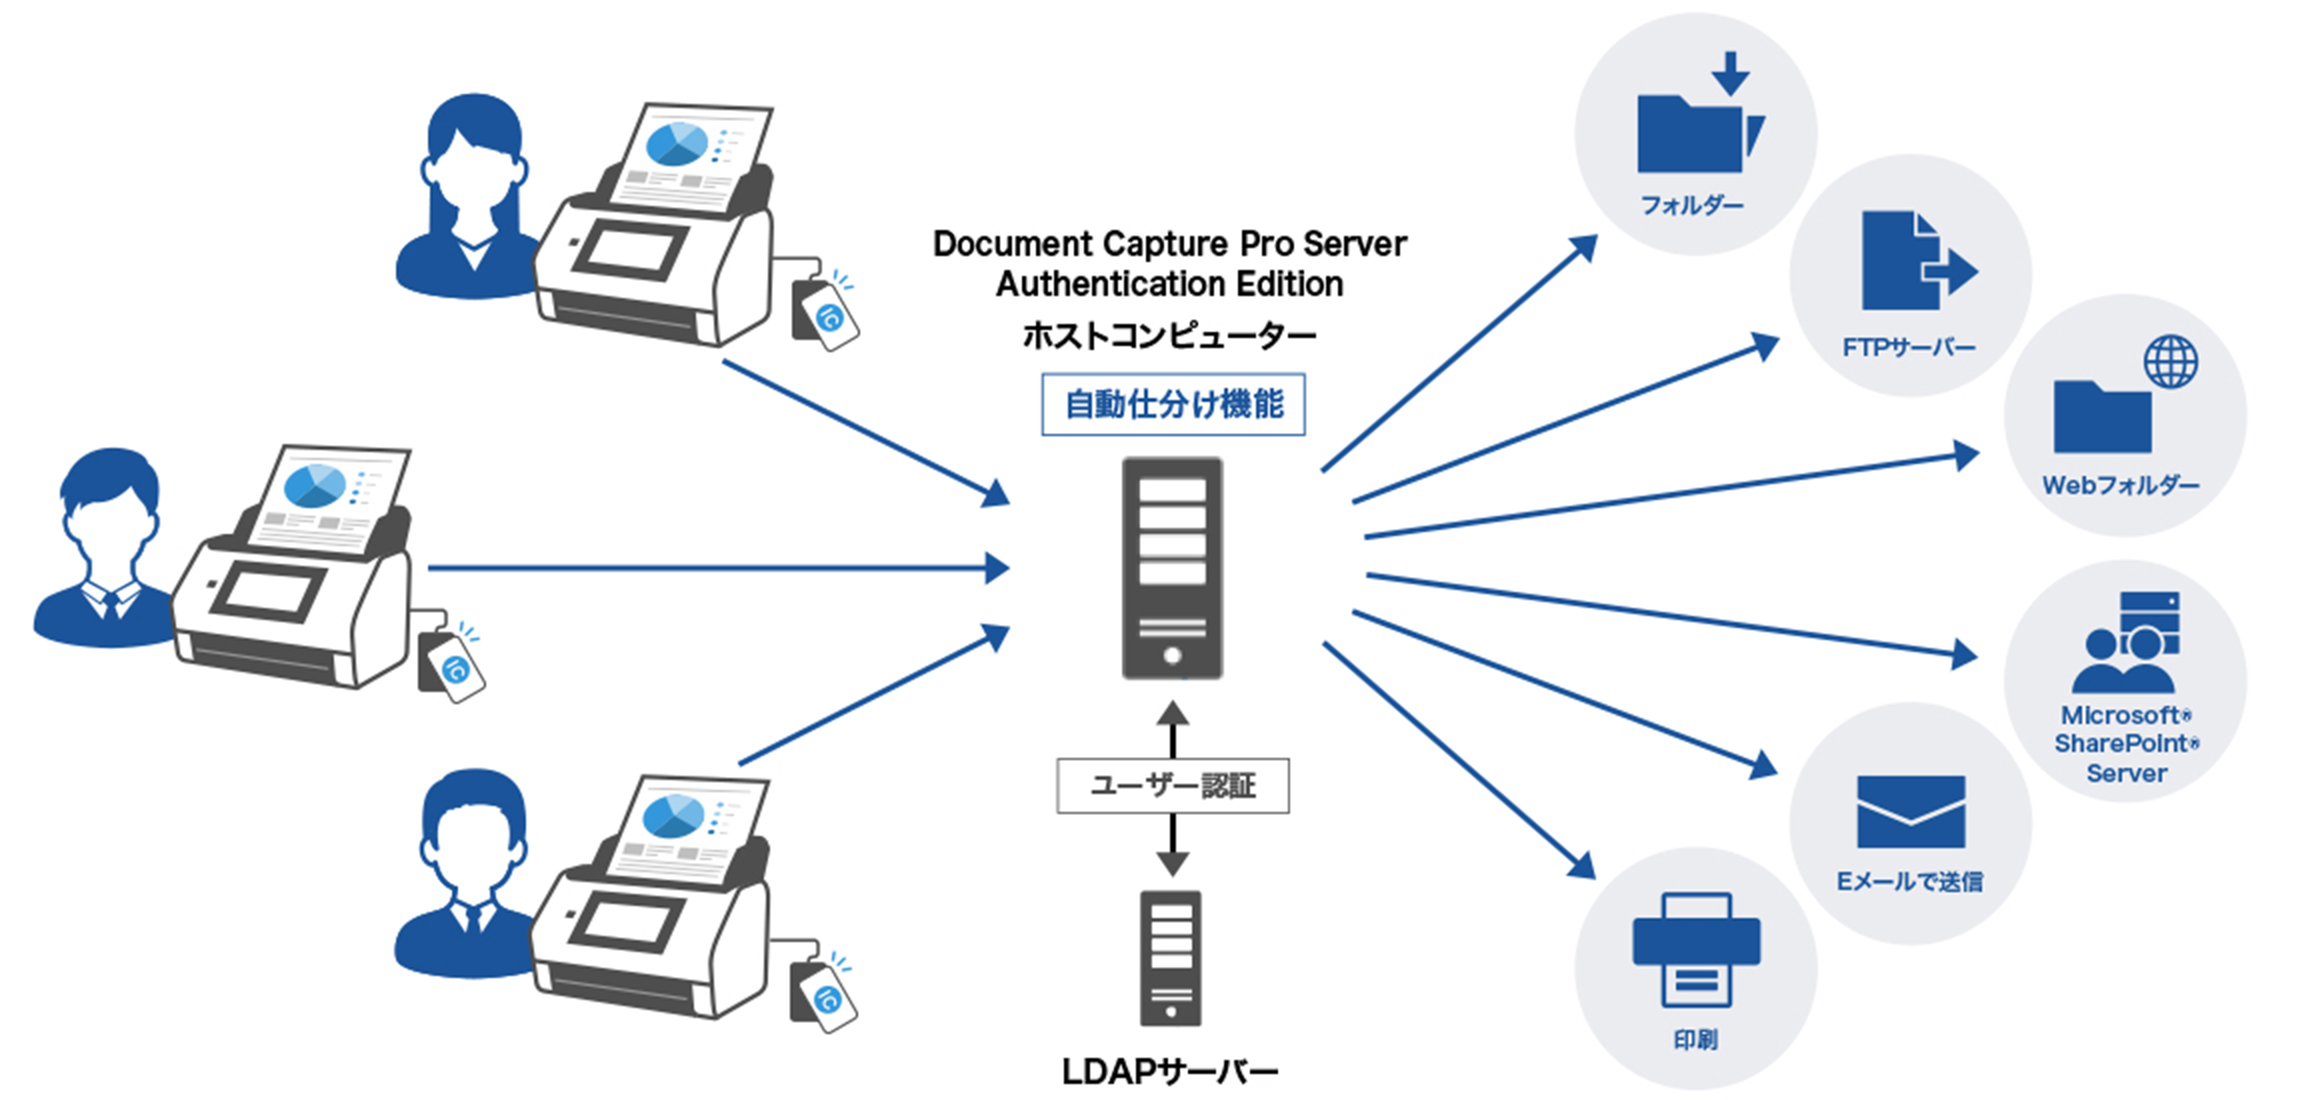 Document Capture Pro Server Authentication Edition